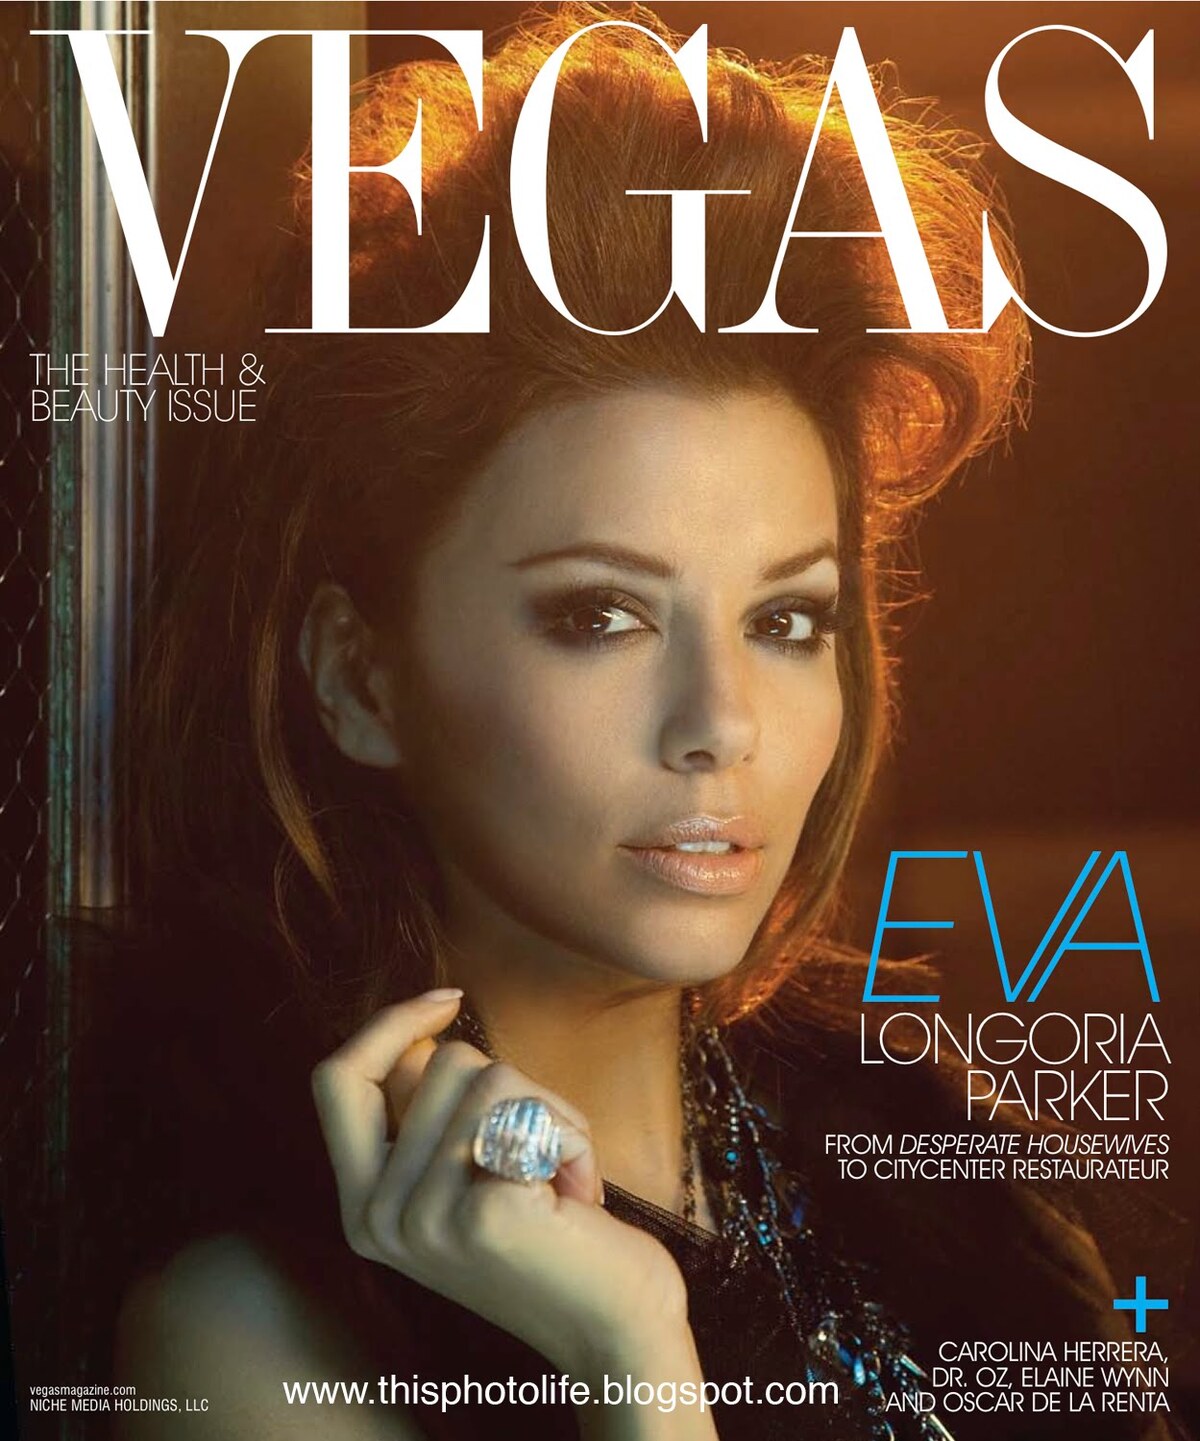 Ева Лонгория в журнале Vegas. Февраль 2010